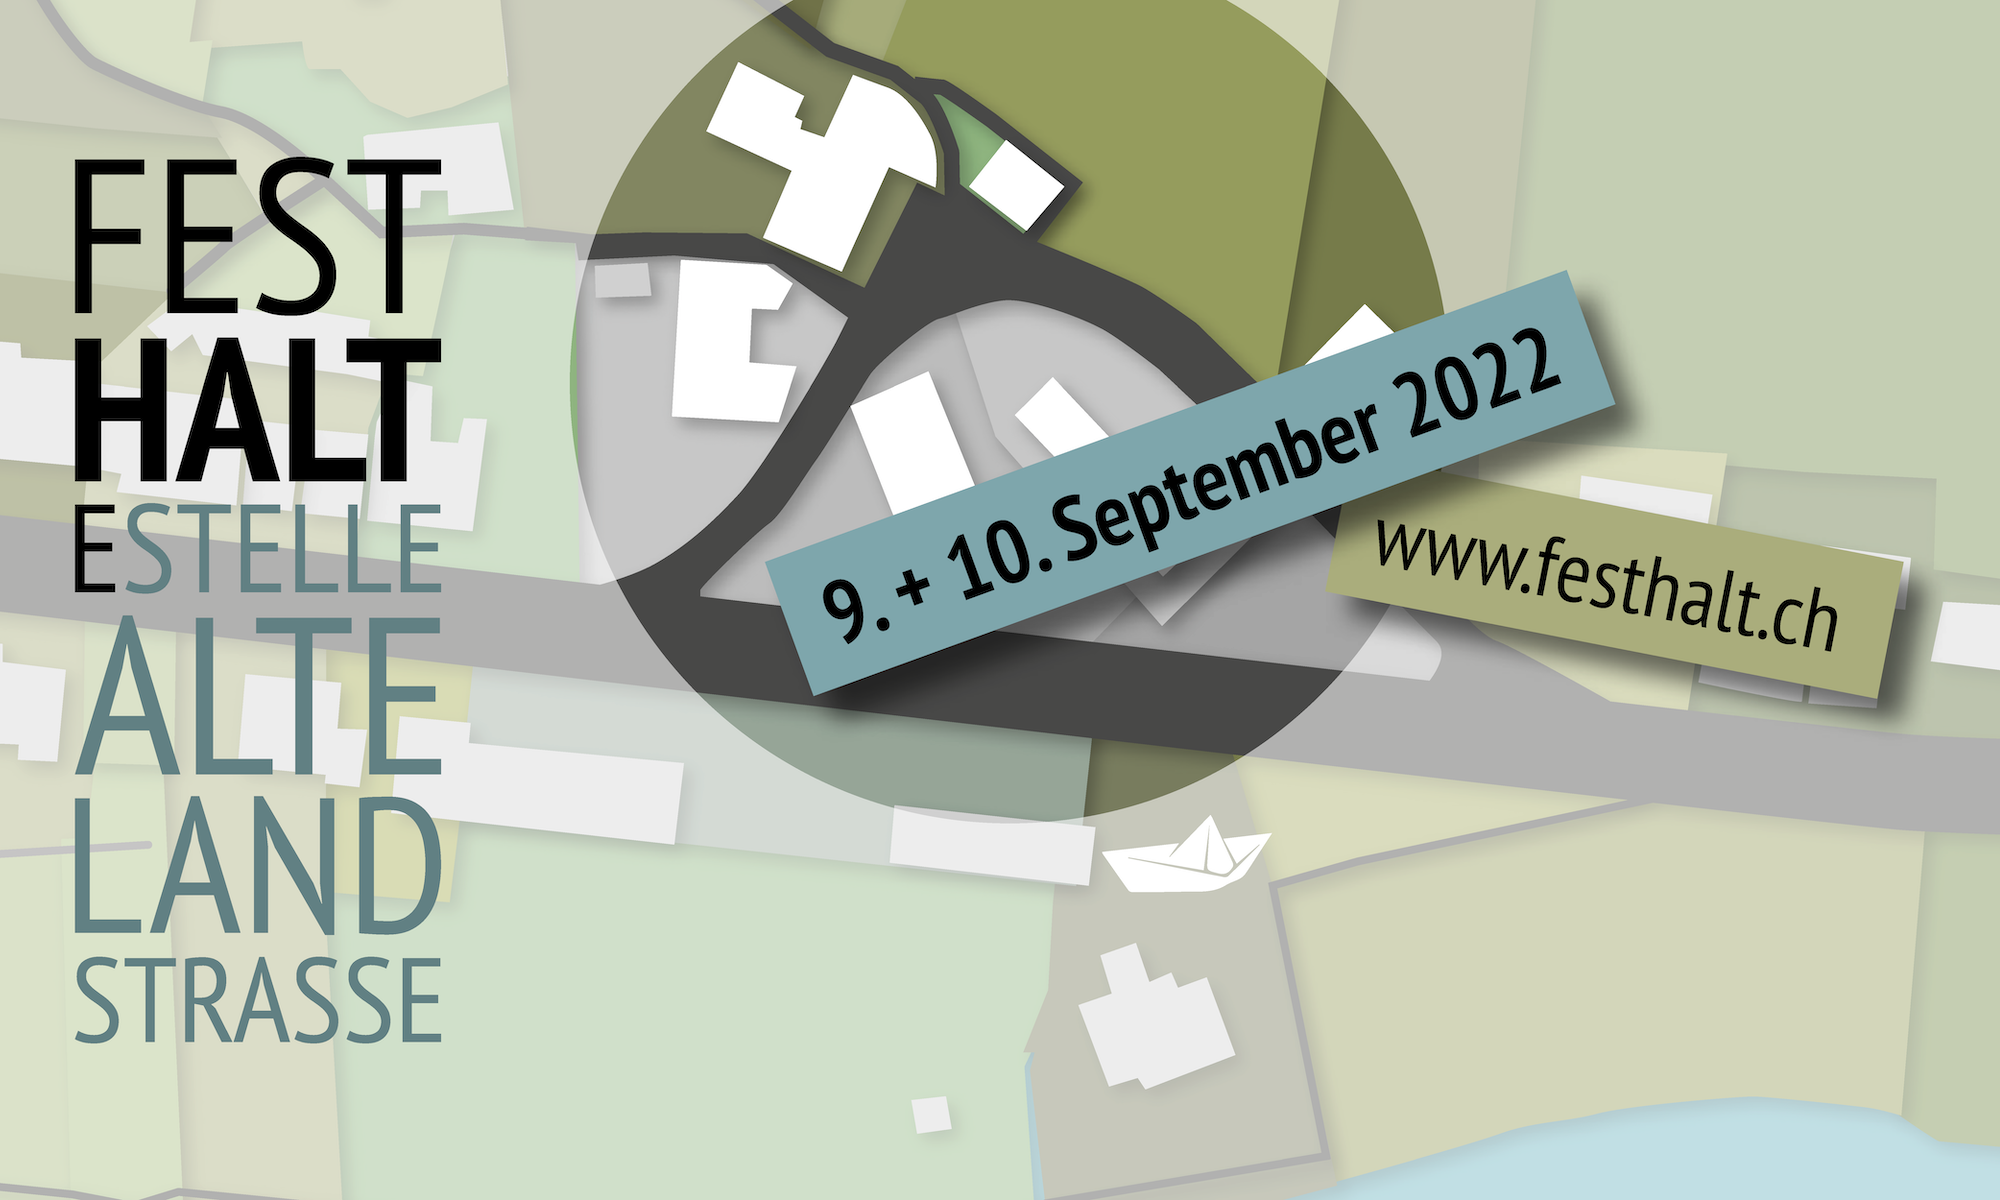 FestHalteStelle Alte Landstrasse | 9. & 10. September 2022